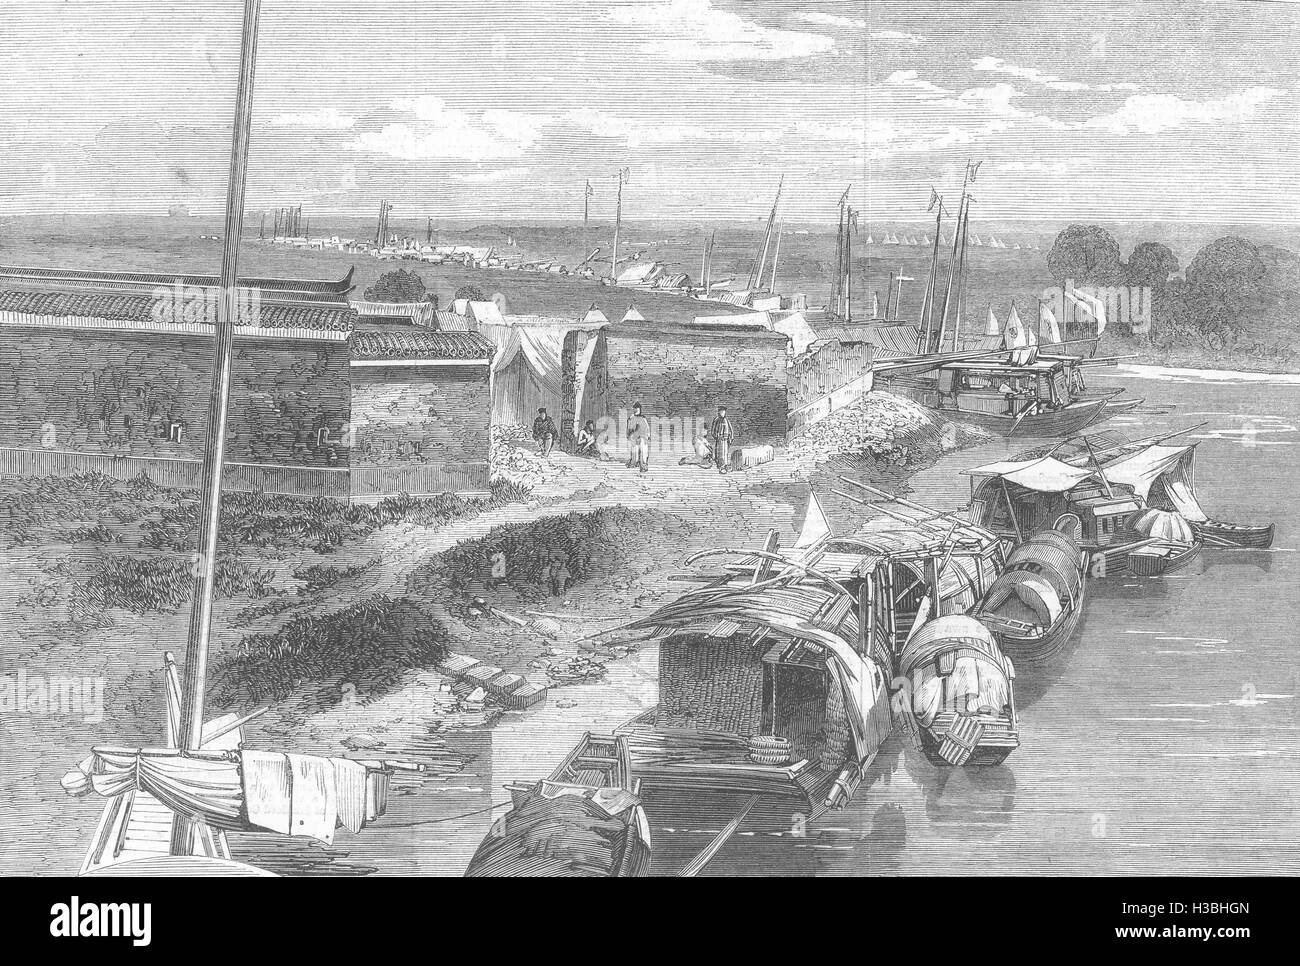 NINGBO ponte 2 miglia, città britanniche, francesi Imperial accampamenti 1862. Il Illustrated London News Foto Stock